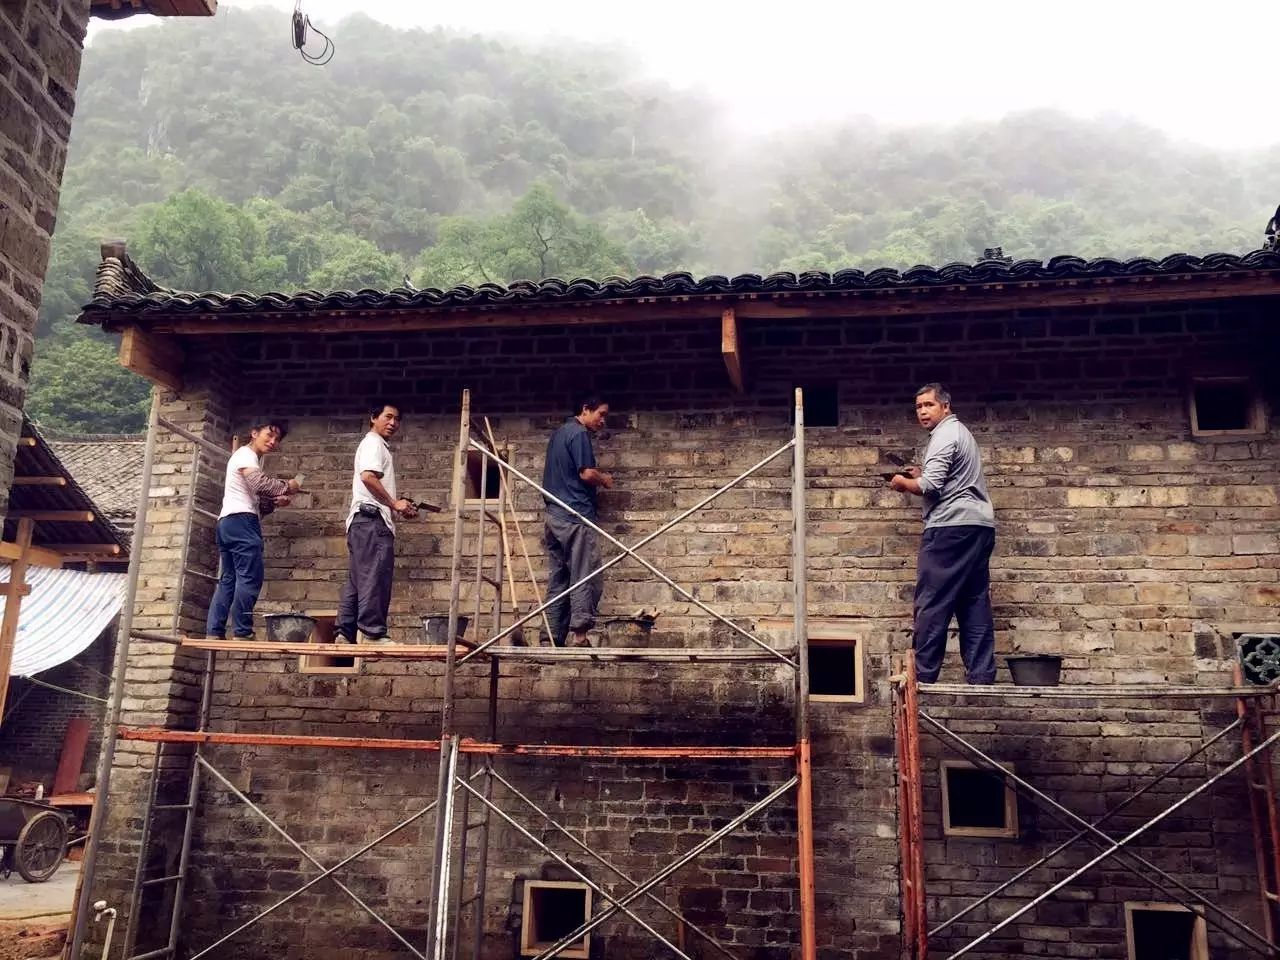 在瑞士,工人们都是按照图纸进行施工,而在中国,农村盖房子全凭经验